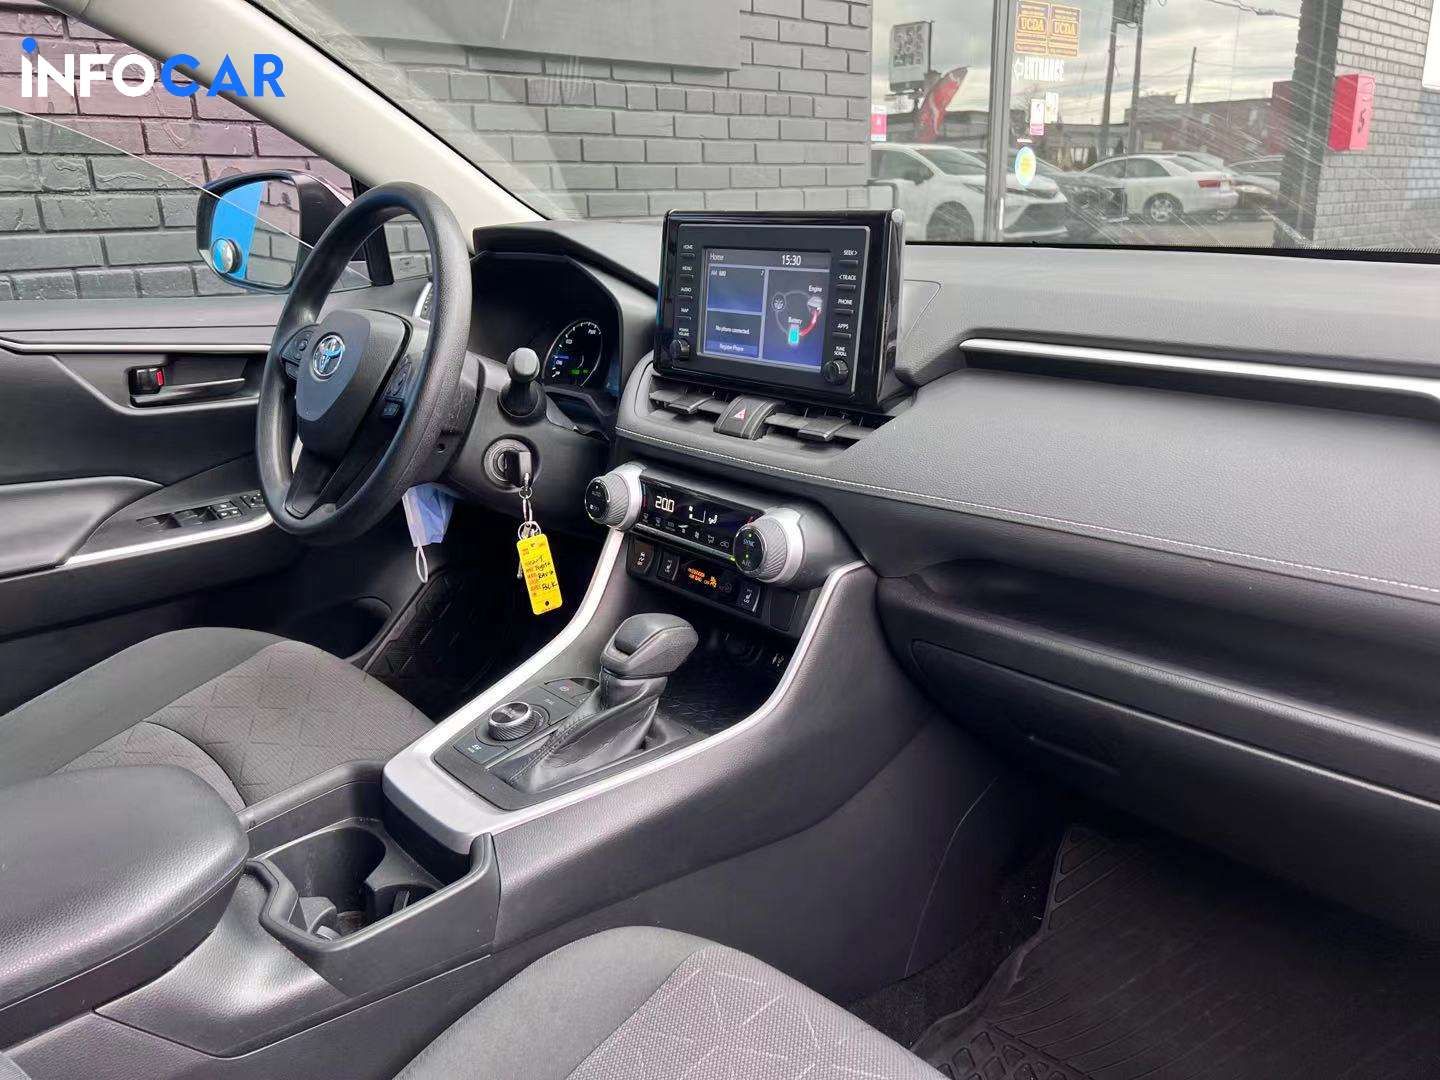 2019 Toyota RAV4 hybrid - INFOCAR - Toronto Auto Trading Platform